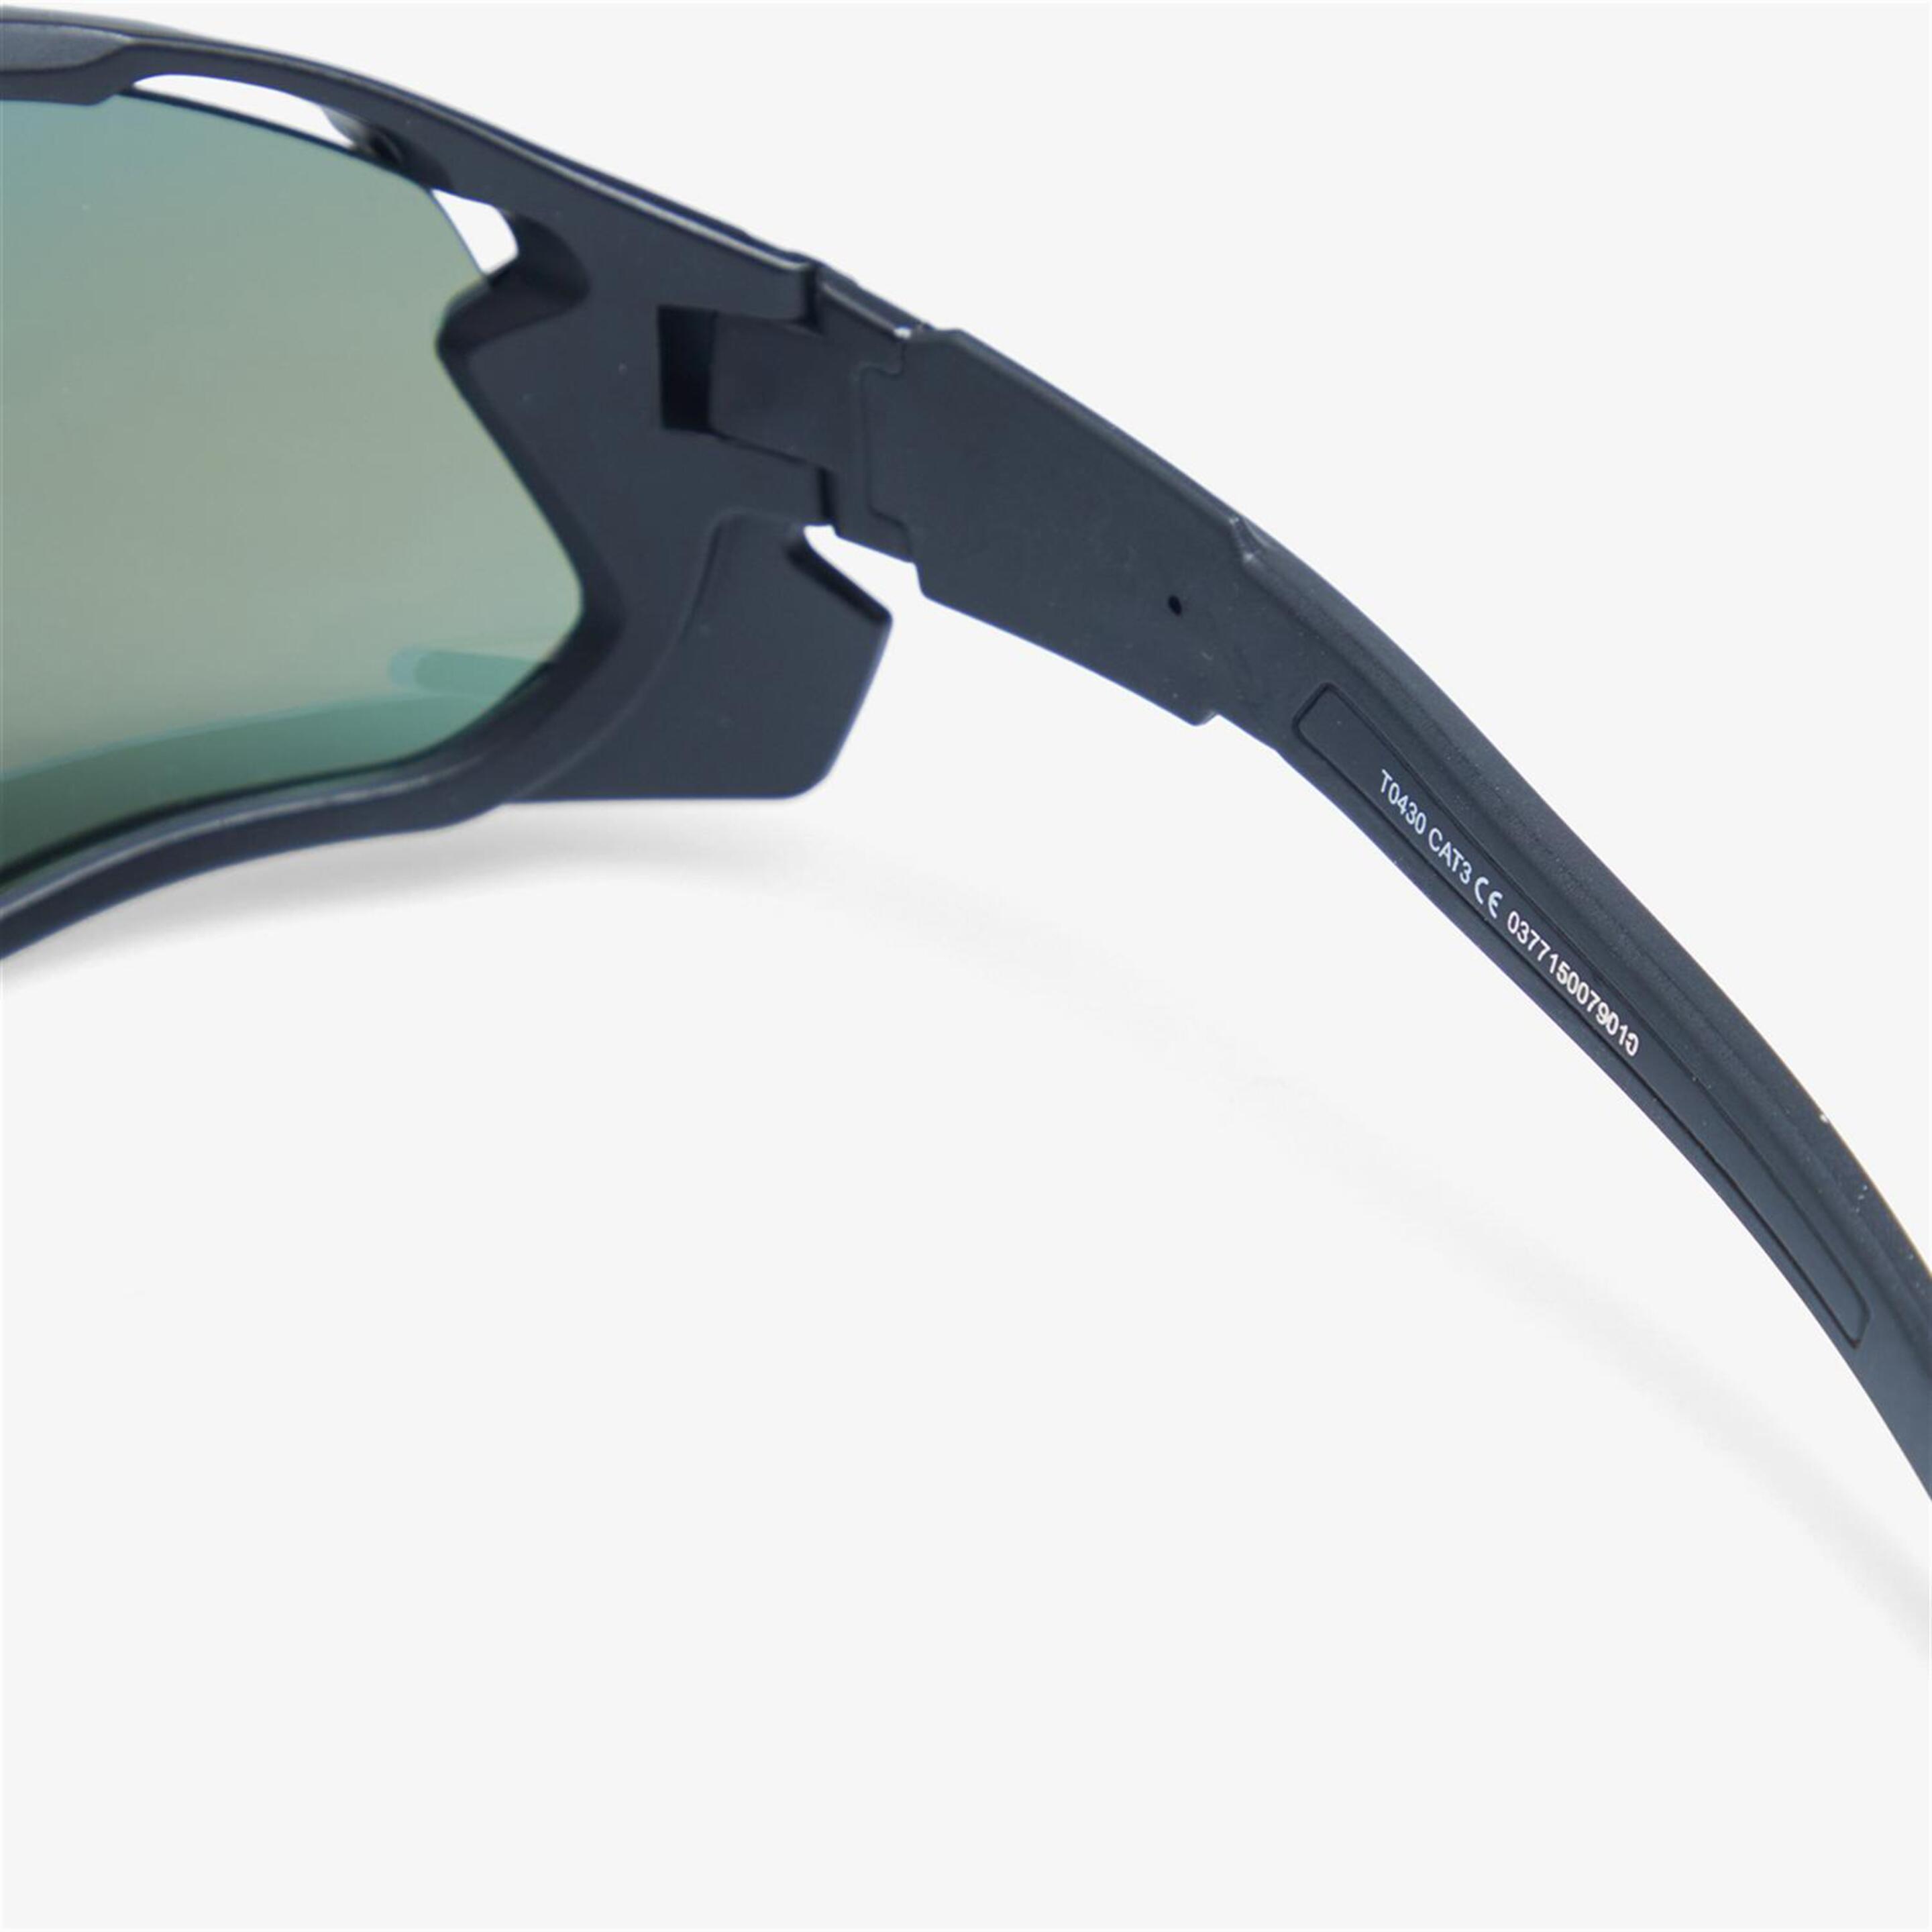 Óculos Mítical - Preto - Óculos Desportivos Ciclismo | Spprt Zone